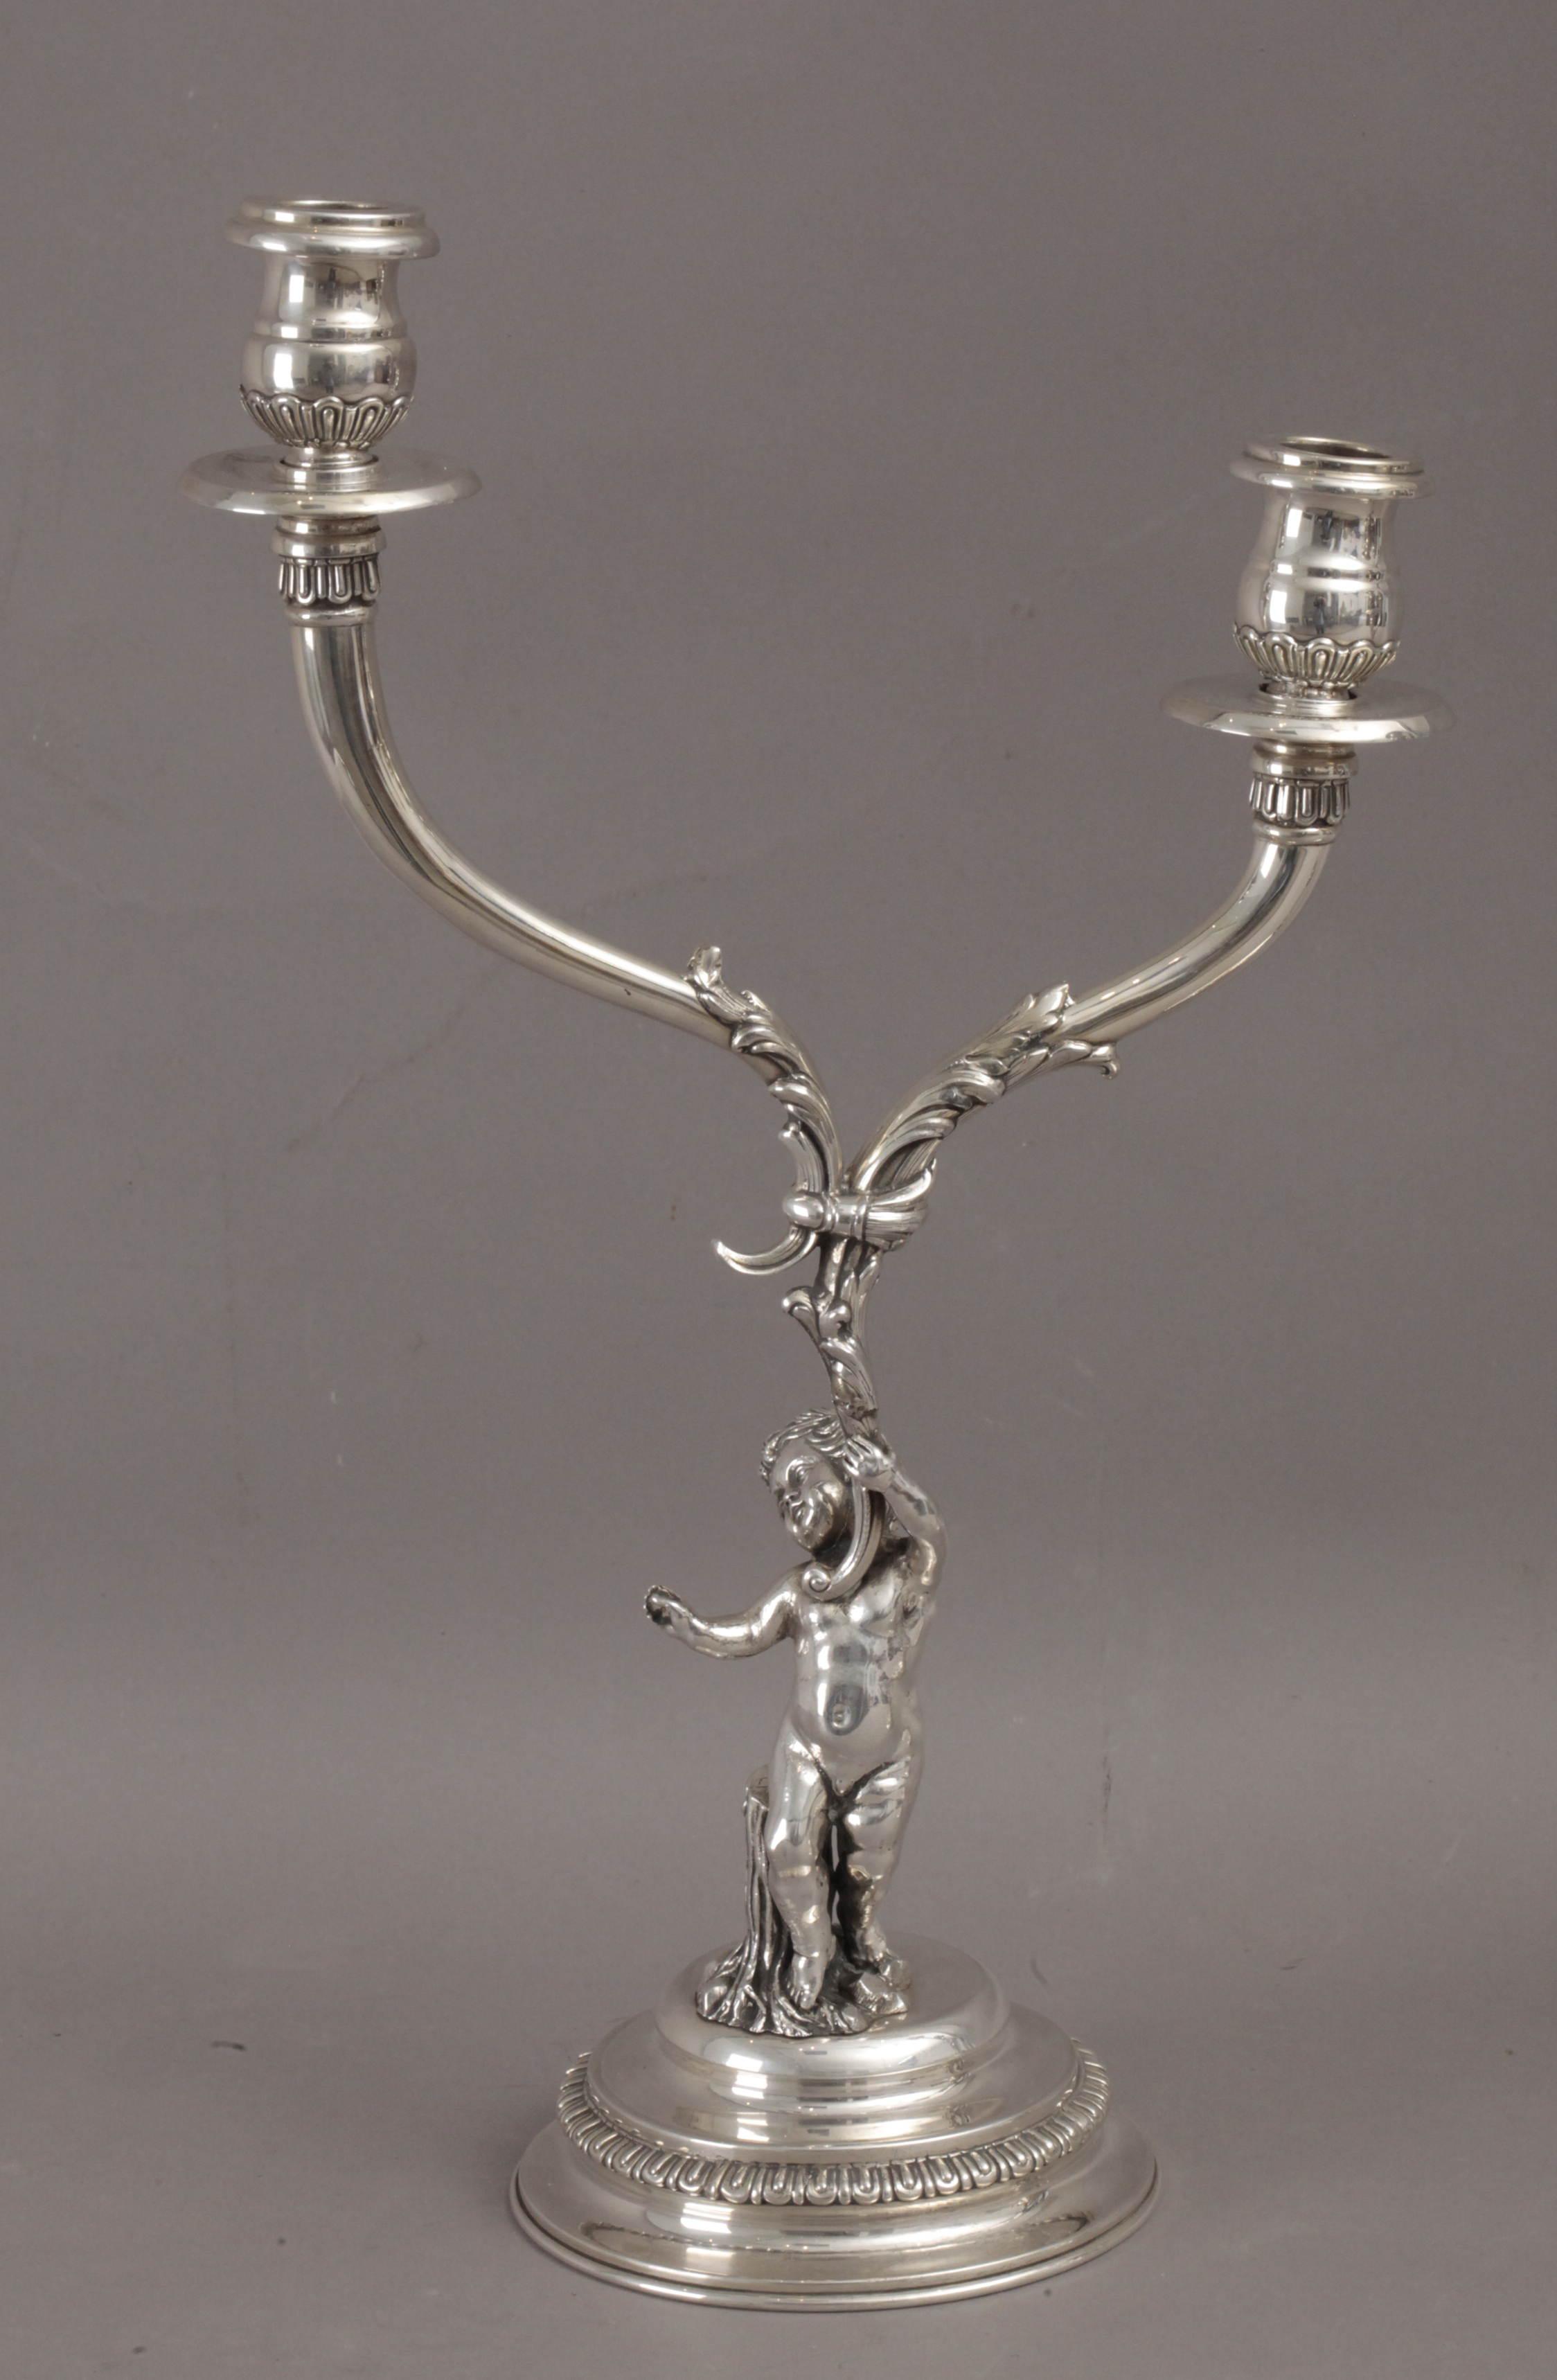 Masriera y Carreras. A pair of 20th century silver candelabras - Image 2 of 5